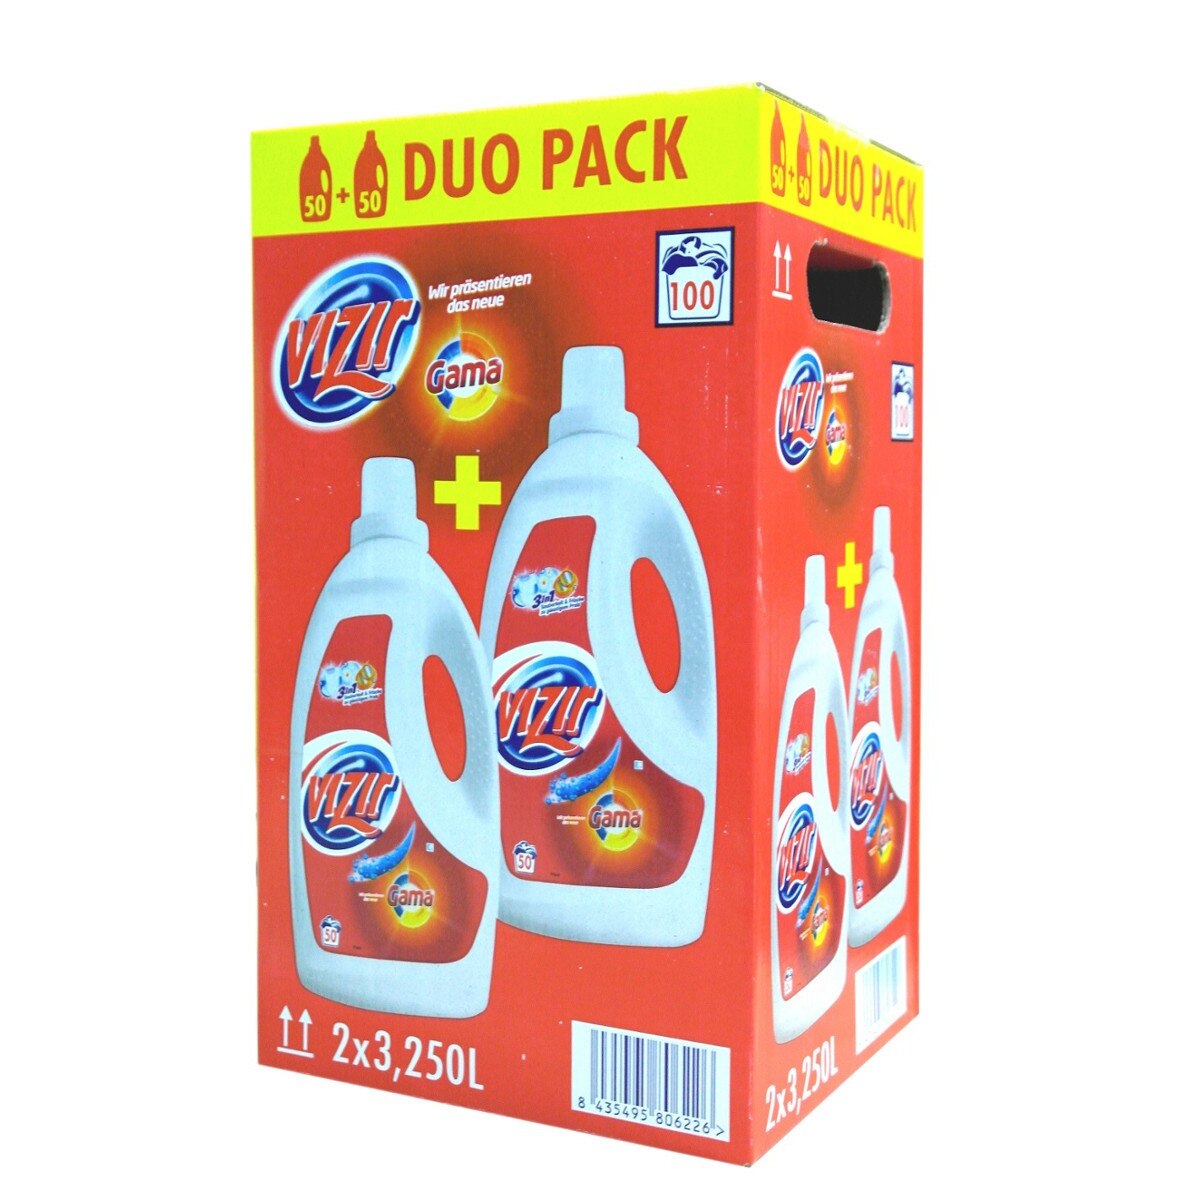 ARIEL Liquid Detergent Lenor Touch 3.3L – Euro Market